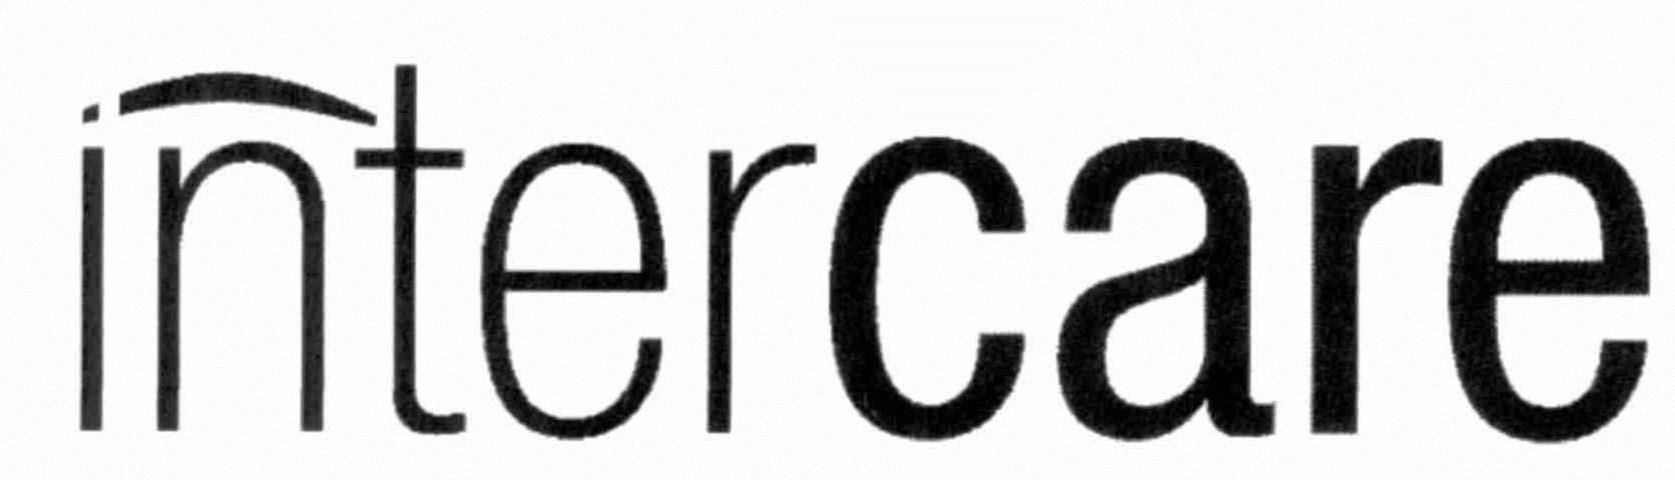 Trademark Logo INTERCARE